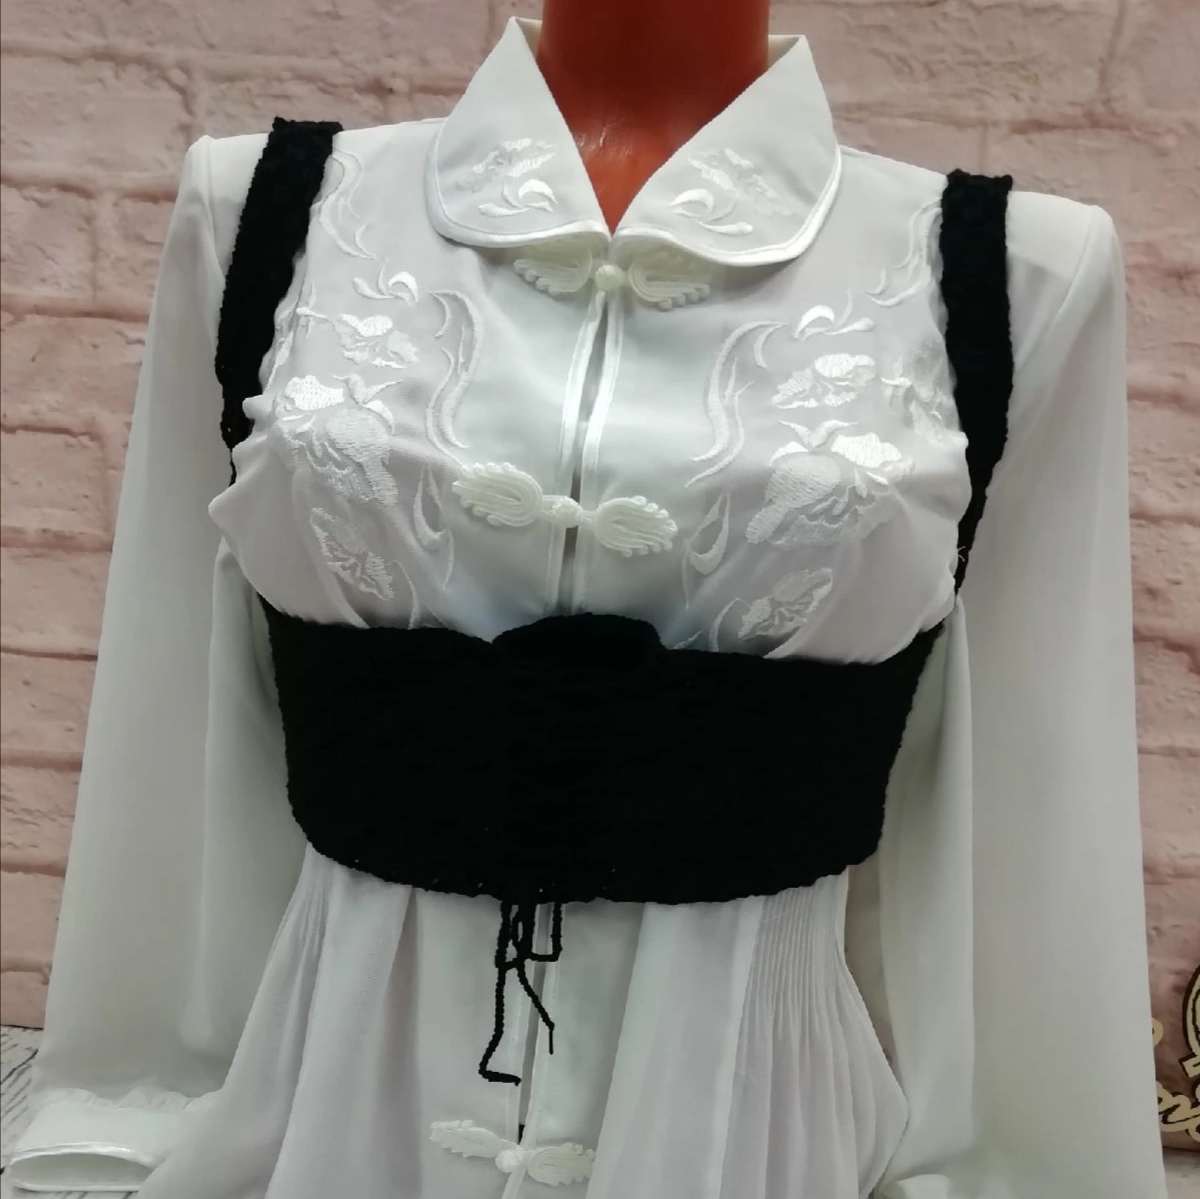 Black Underboob corset belt.  Underboob corset, Corset outfit, Underboob  corset outfit